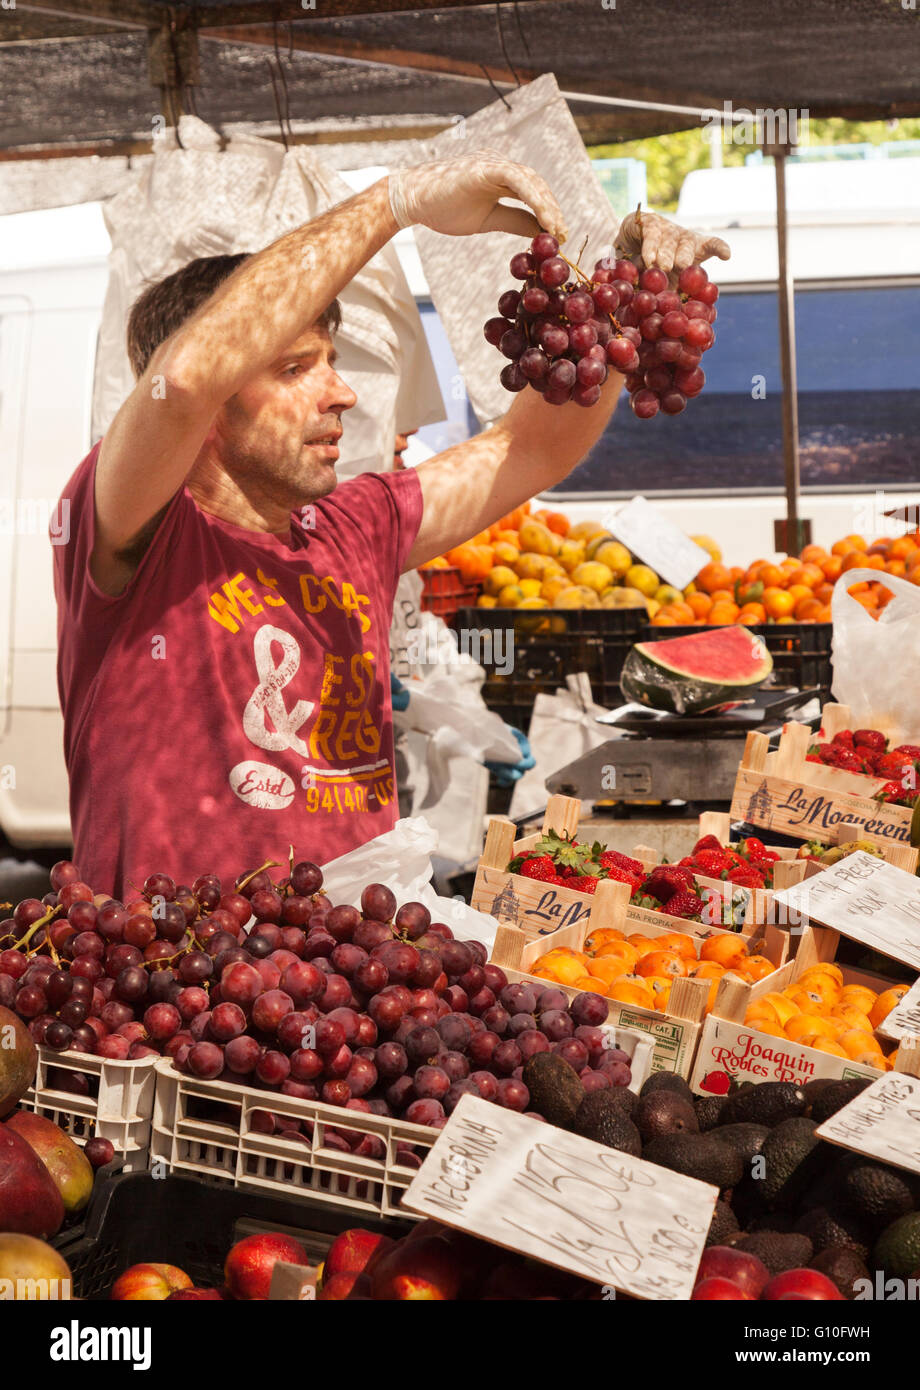 Markt Standinhaber in Marbella Markt, Verkauf von Trauben, Marbella Outdoor-Lebensmittelmarkt, Andalusien Spanien Europa Stockfoto